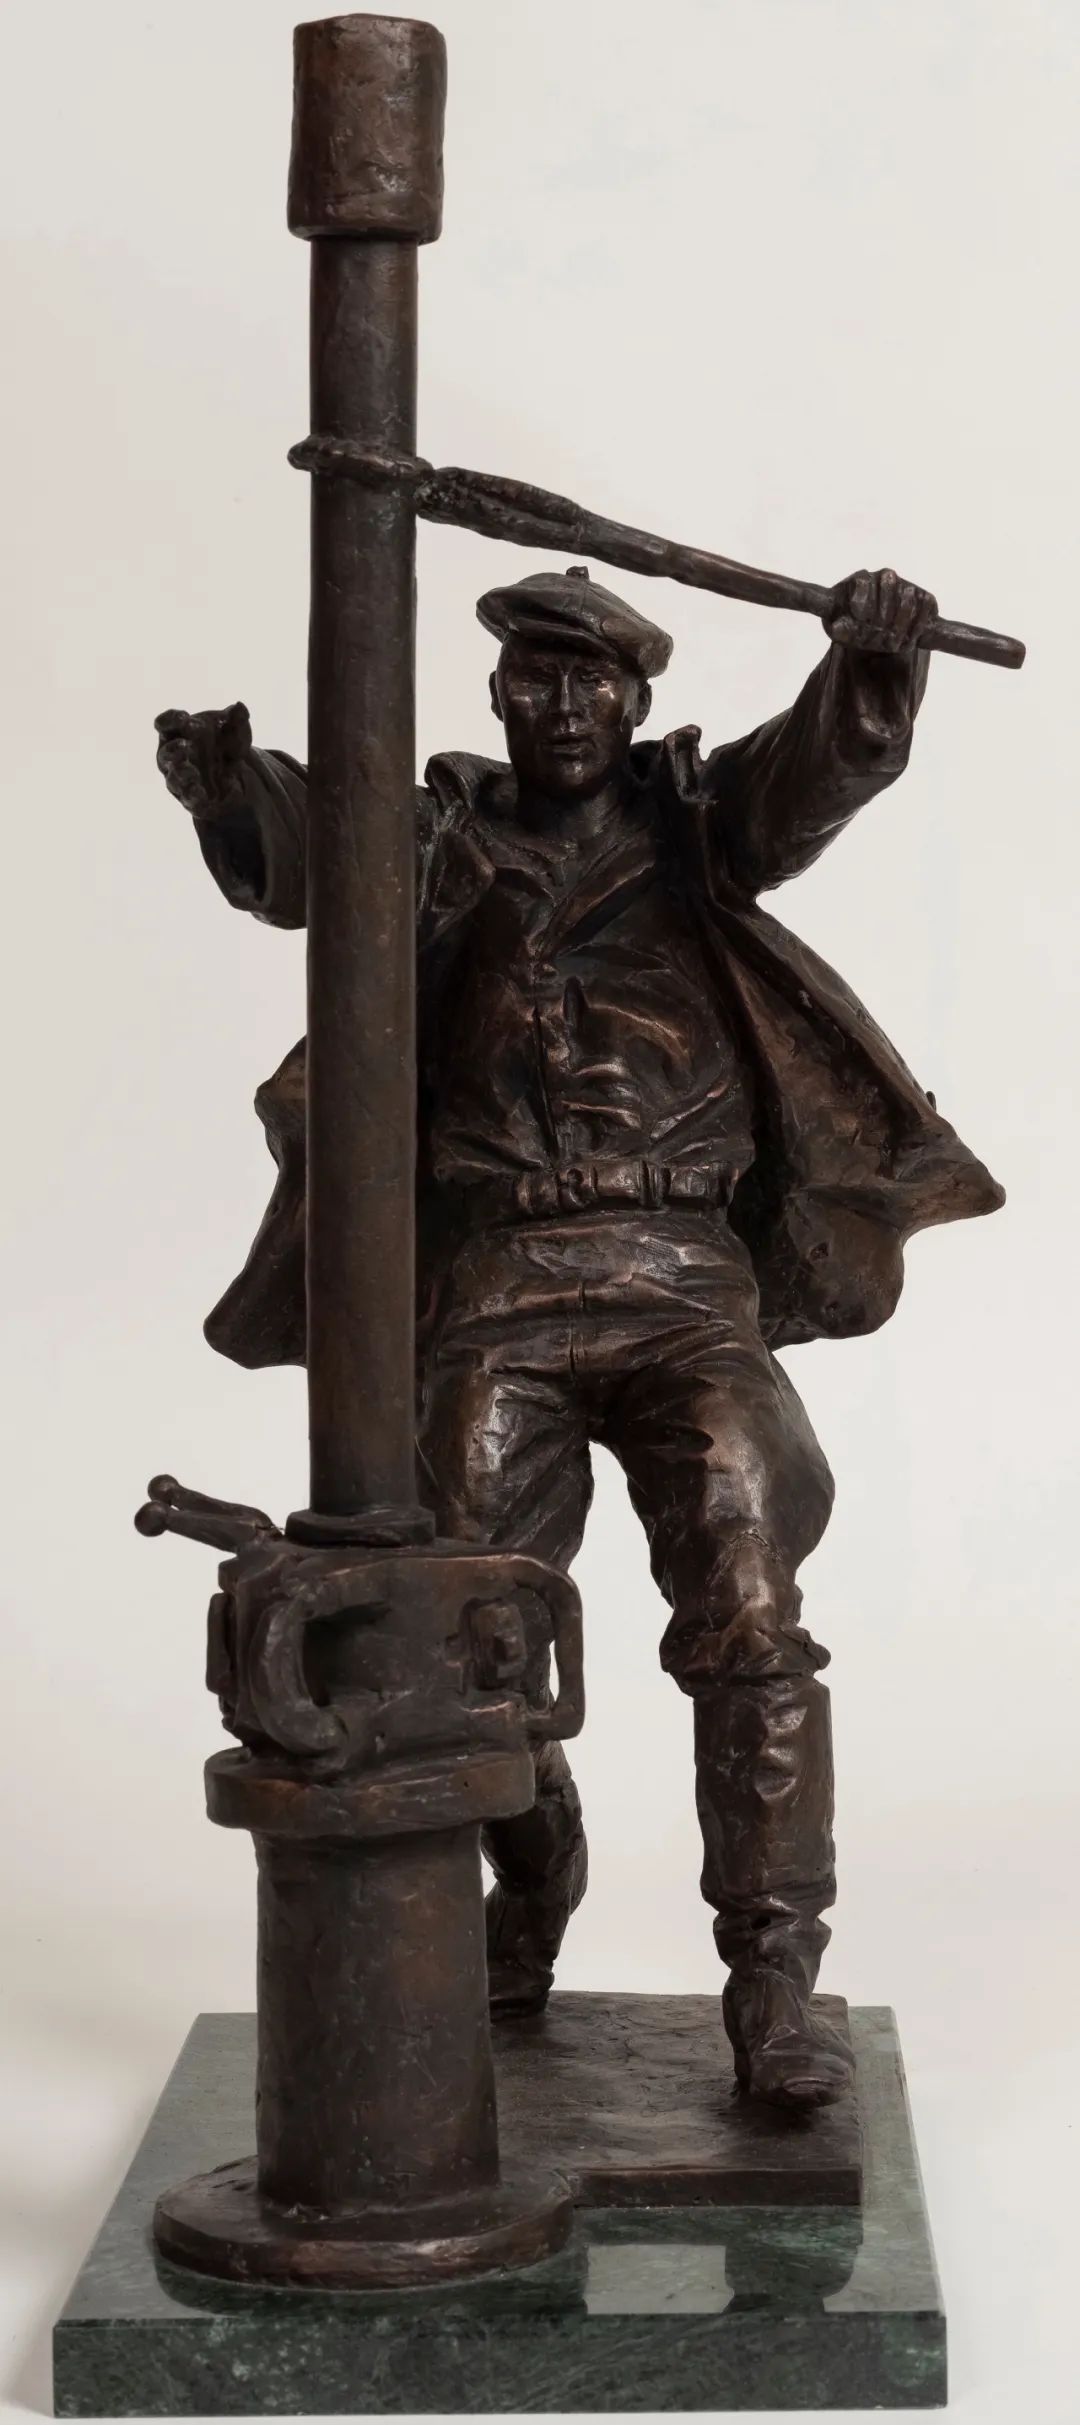 40年代的石油工作者 安德烈·卡瓦利丘克  雕塑 52×20×30cm 2017年 中国美术馆藏 俄罗斯